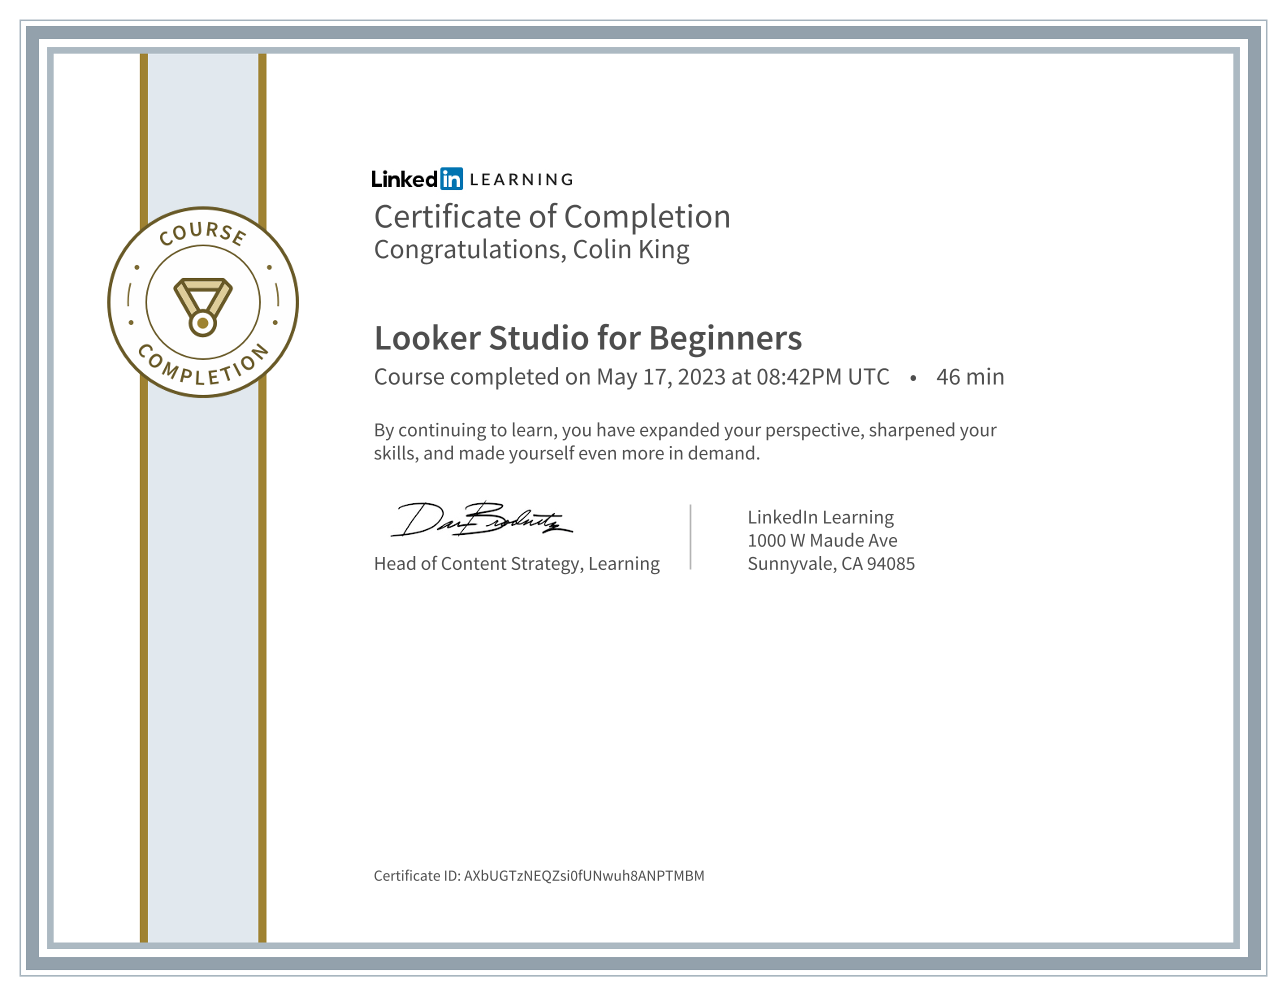 Looker Studio for Beginners certificate